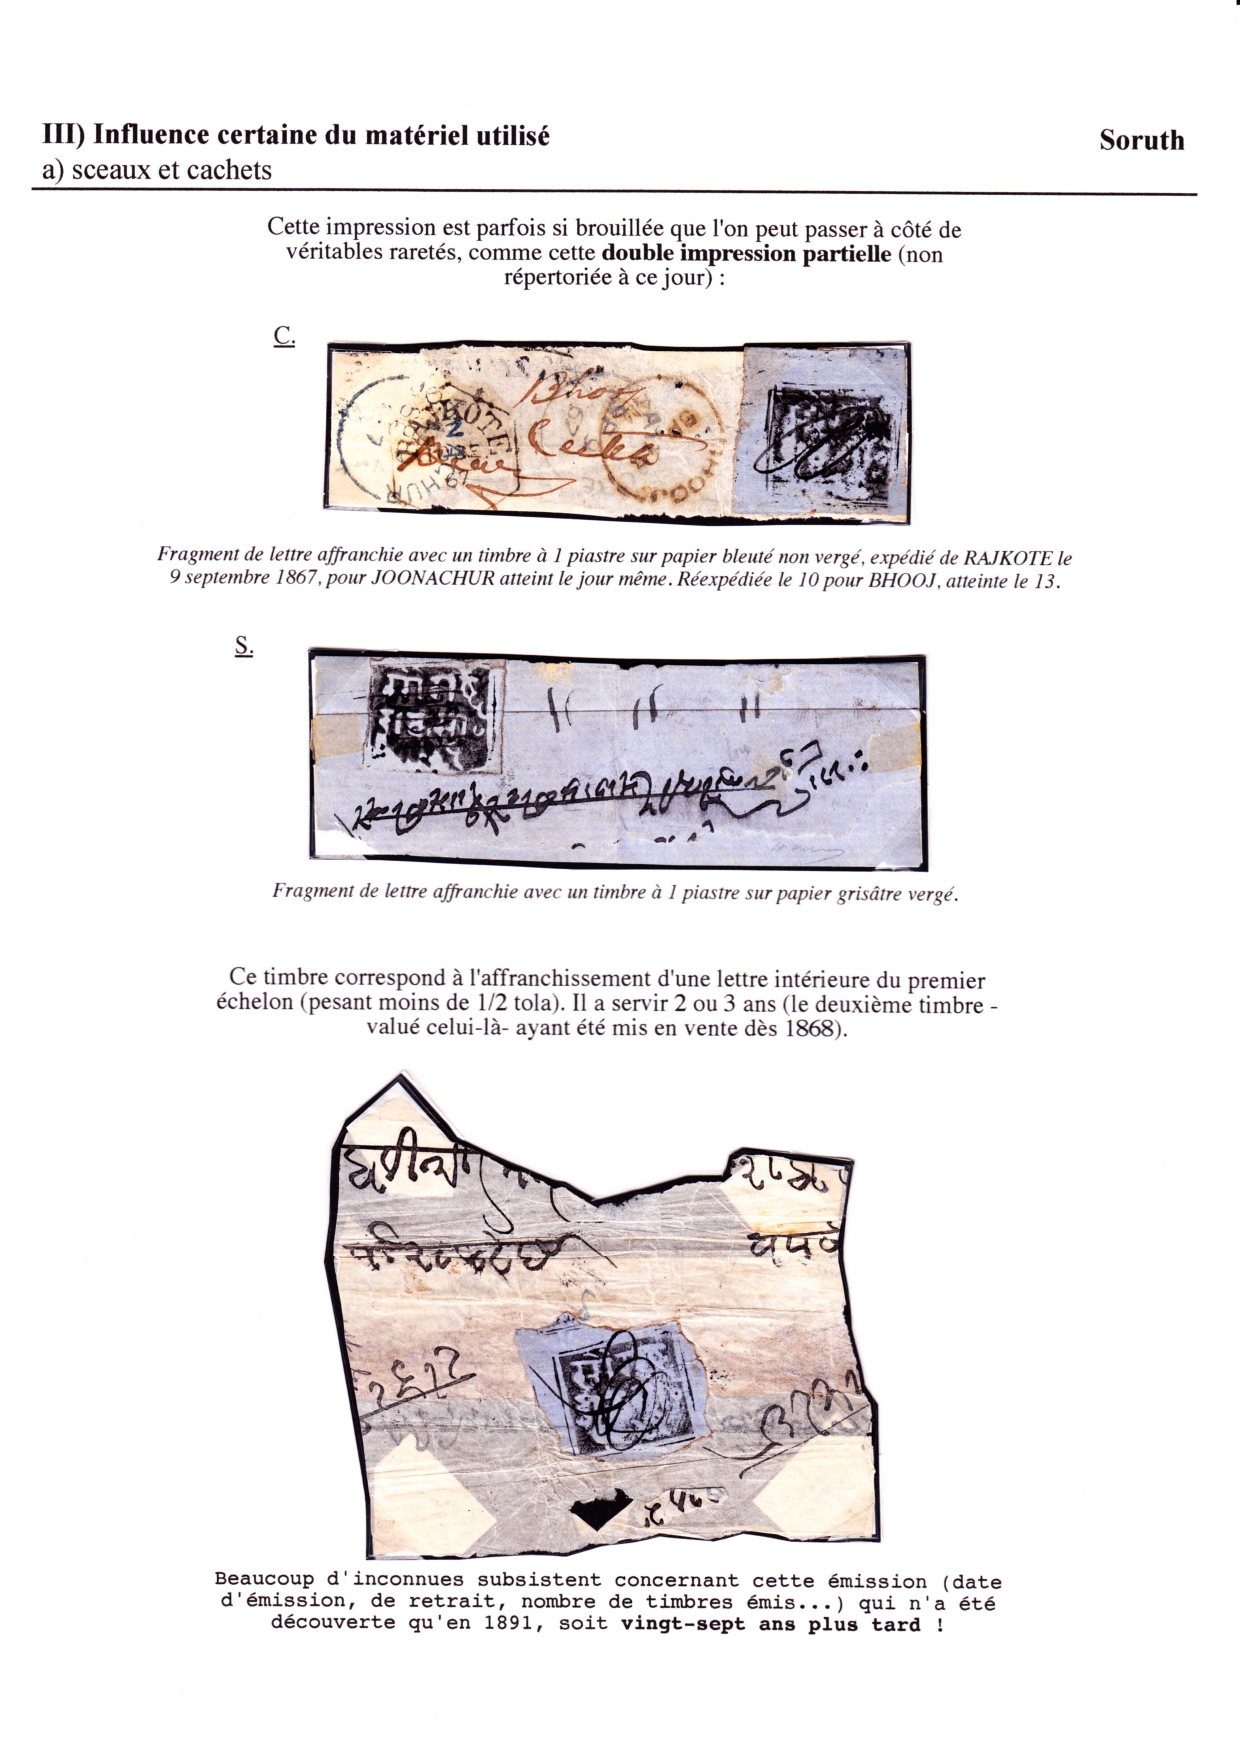 Les d��buts des timbres sans valeur faciale apparente p. 42